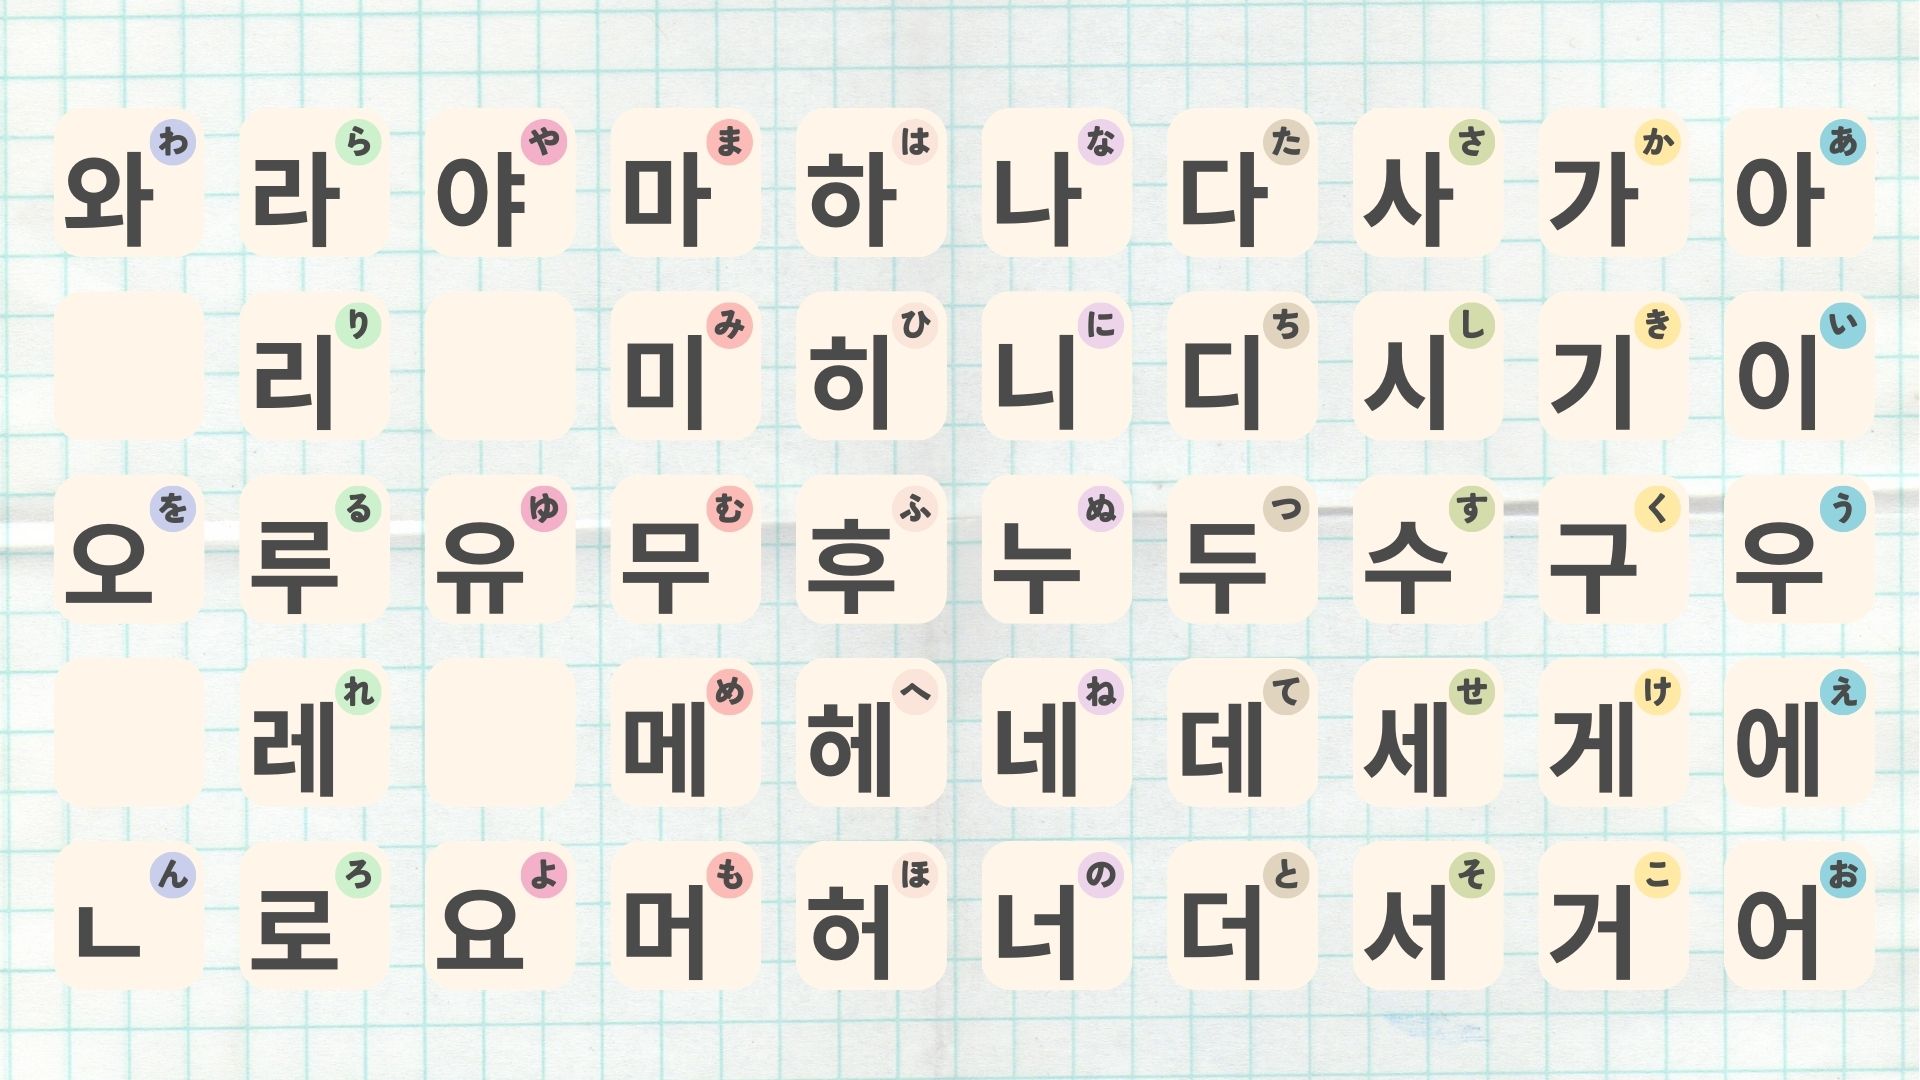 コピペできる】ハングル文字一覧表と50音表大公開 | 0から始める韓国語